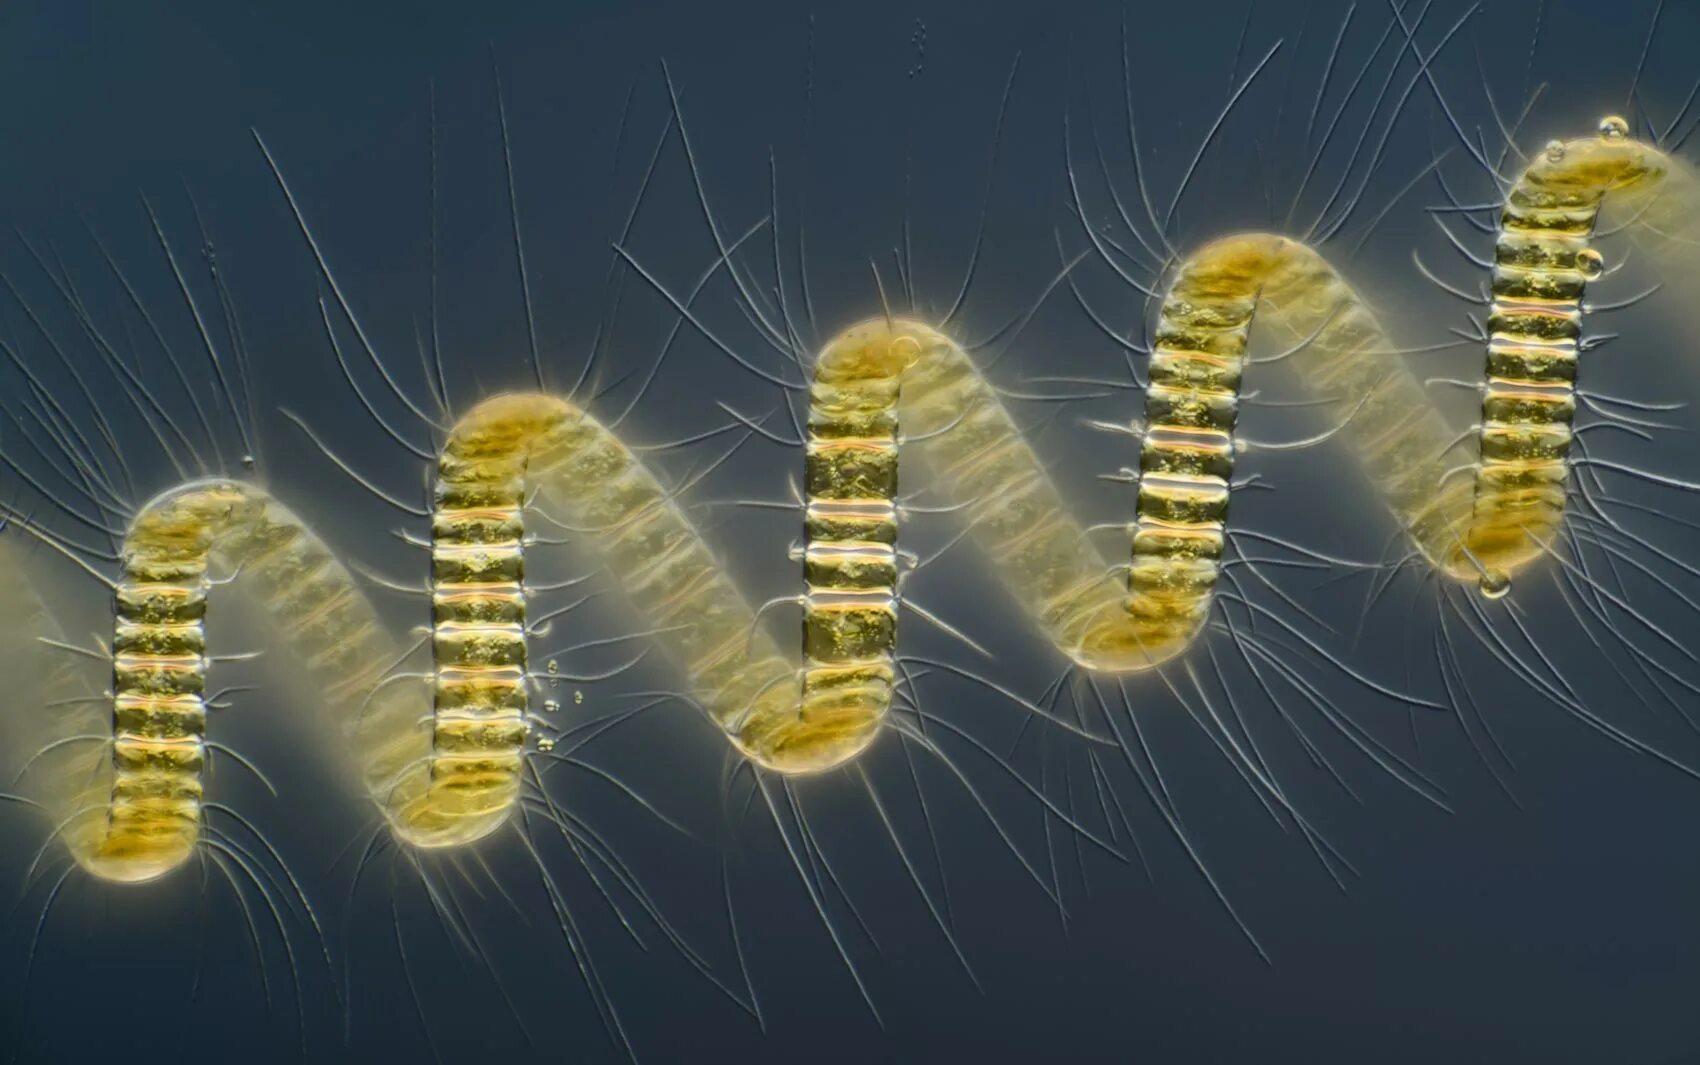 Фотография микро. Хетоцерос водоросль. Фитопланктон диатомовые водоросли. Chaetoceros gracilis. Обитатели микромира.